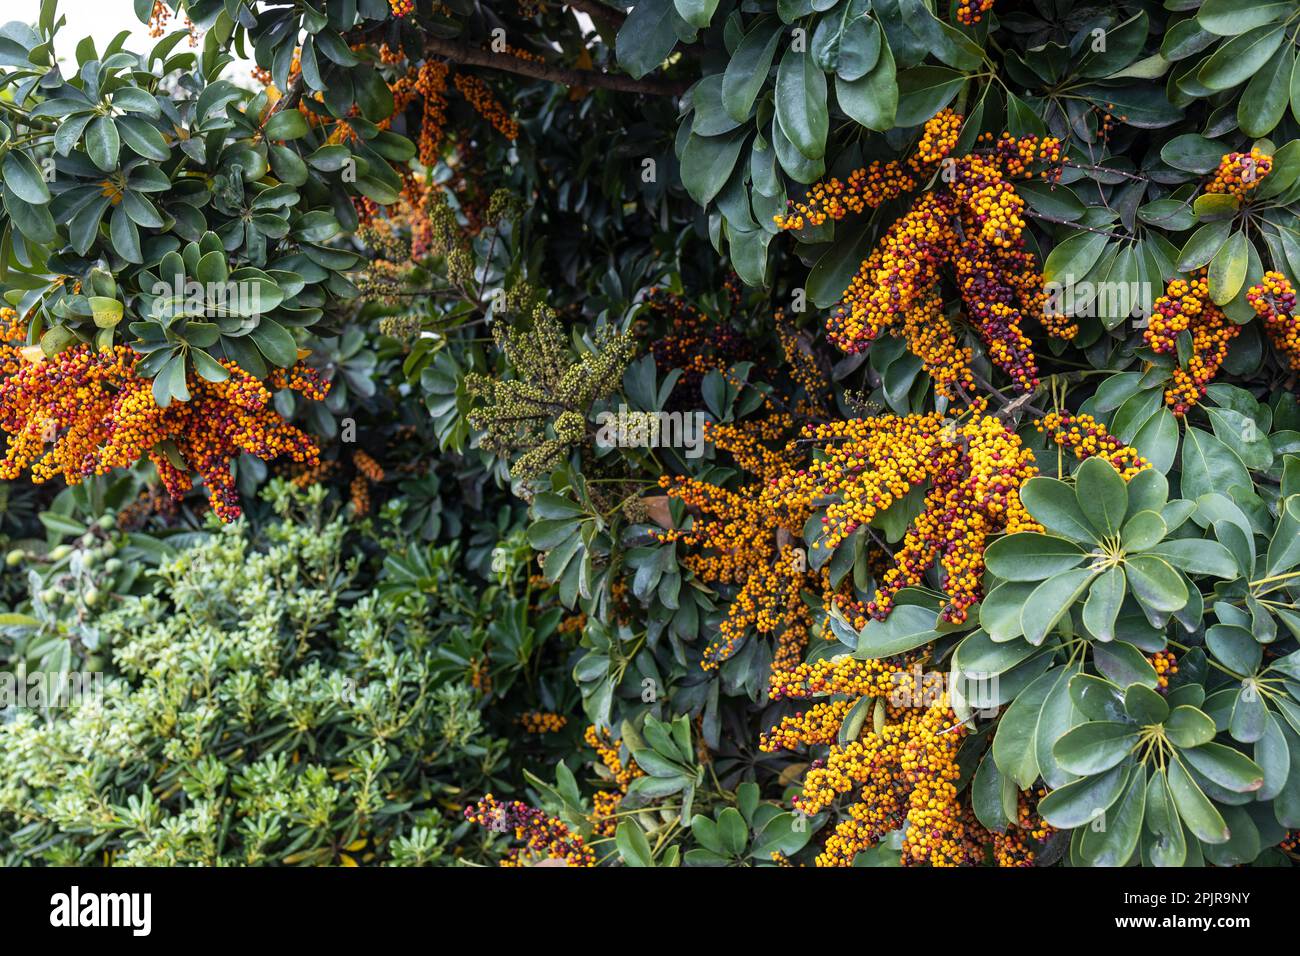 Flora of Israel. Schefflera bloom showcases array of berries Stock Photo